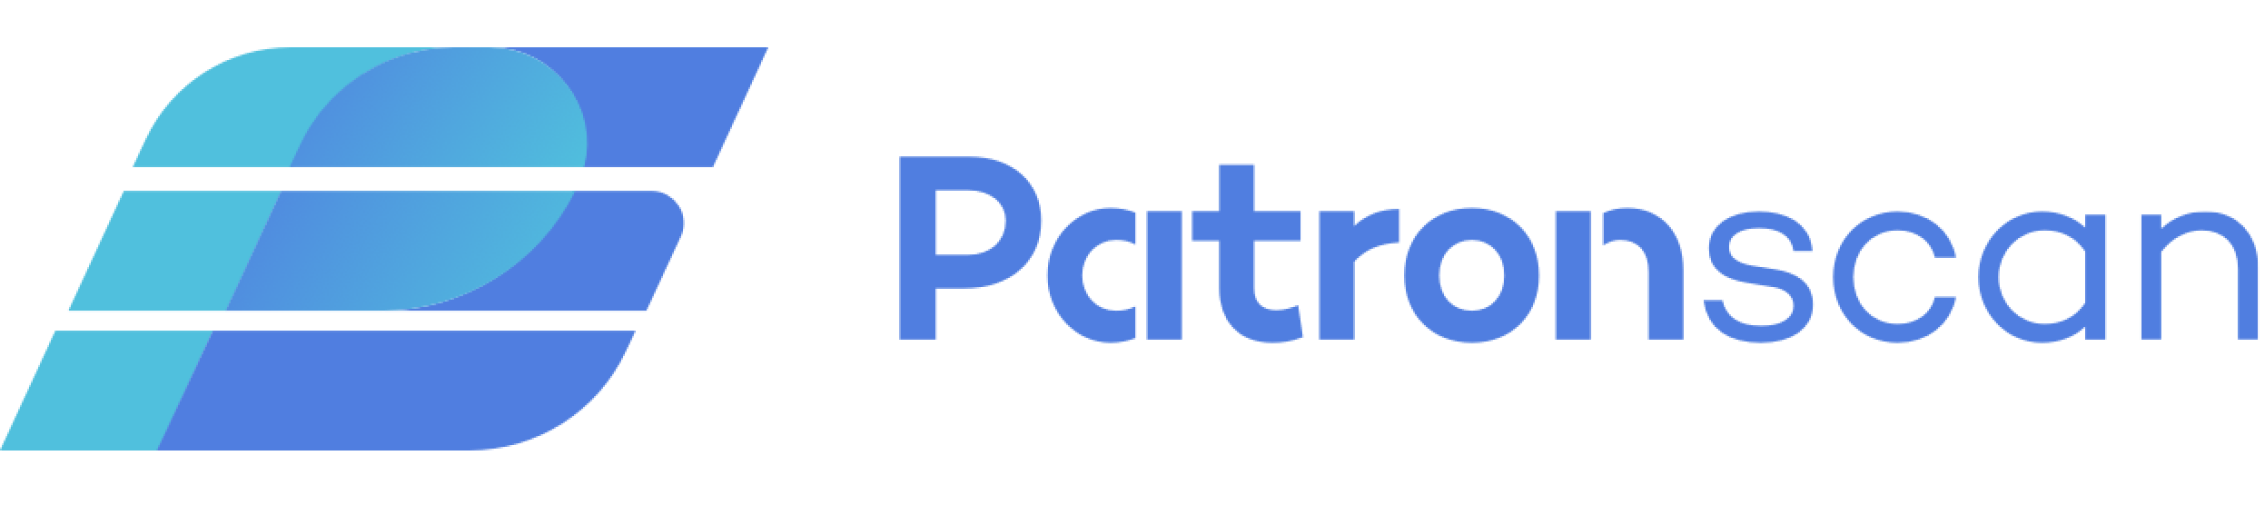 Patronscan Logo